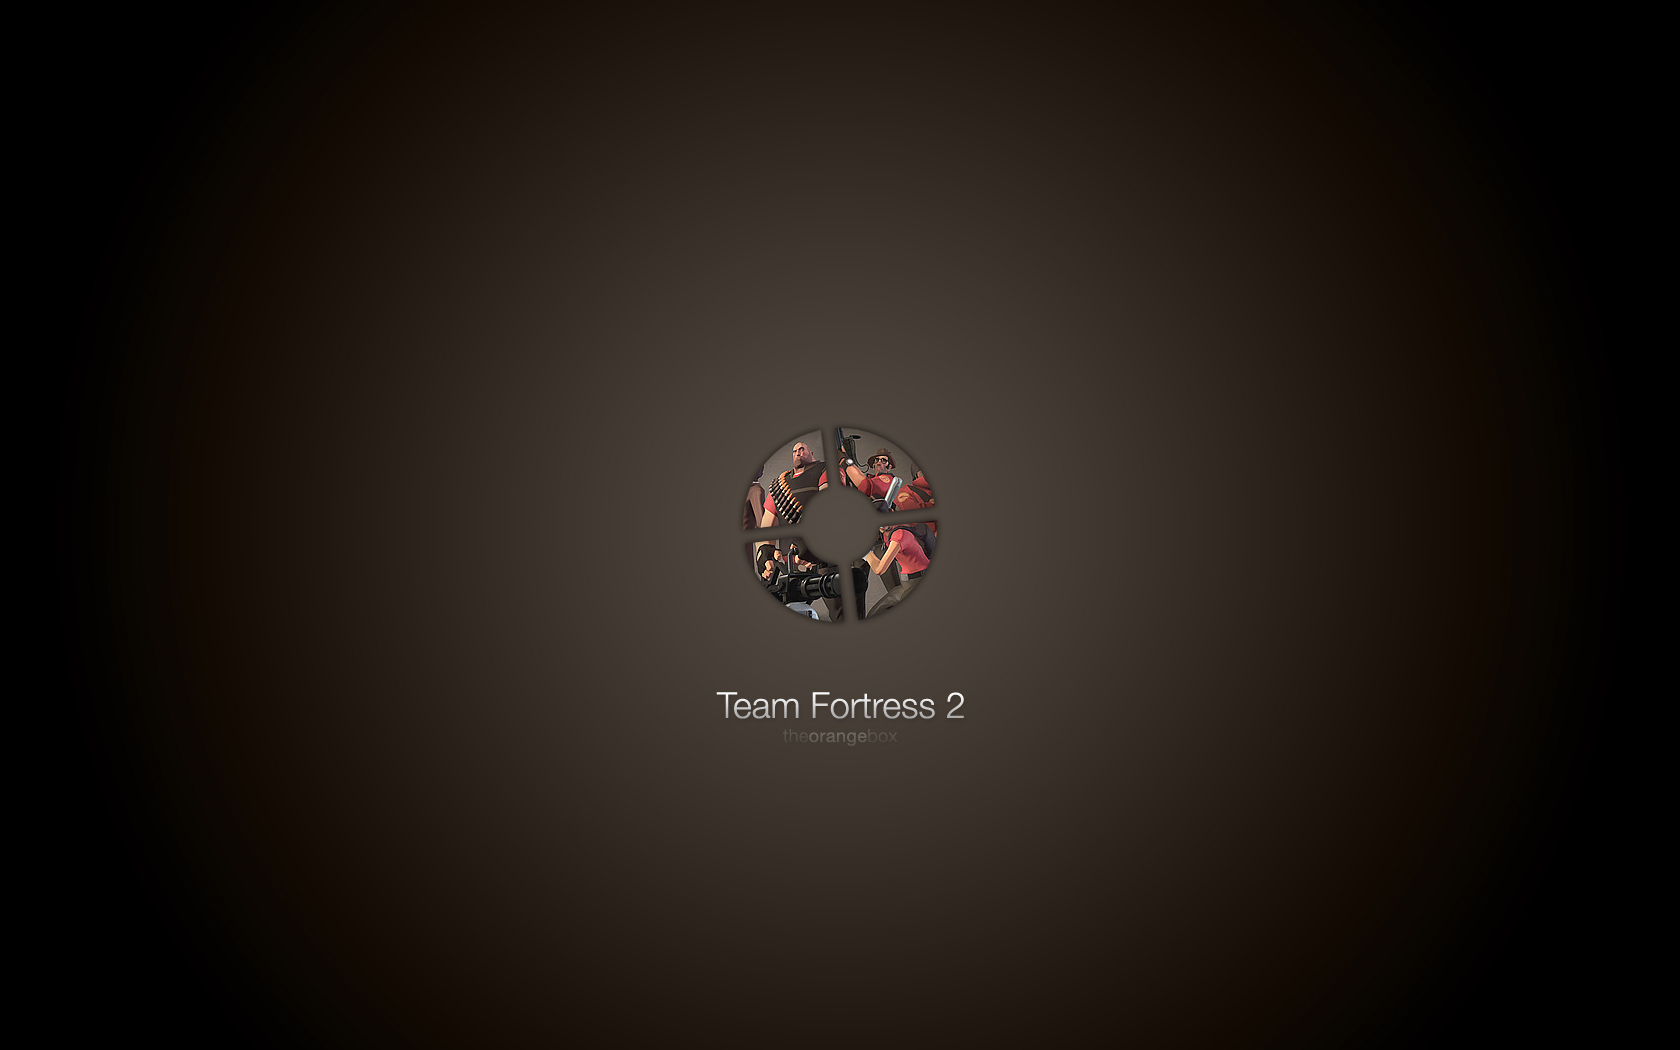 Скачать обои бесплатно Team Fortress 2, Видеоигры, Team Fortress картинка на рабочий стол ПК